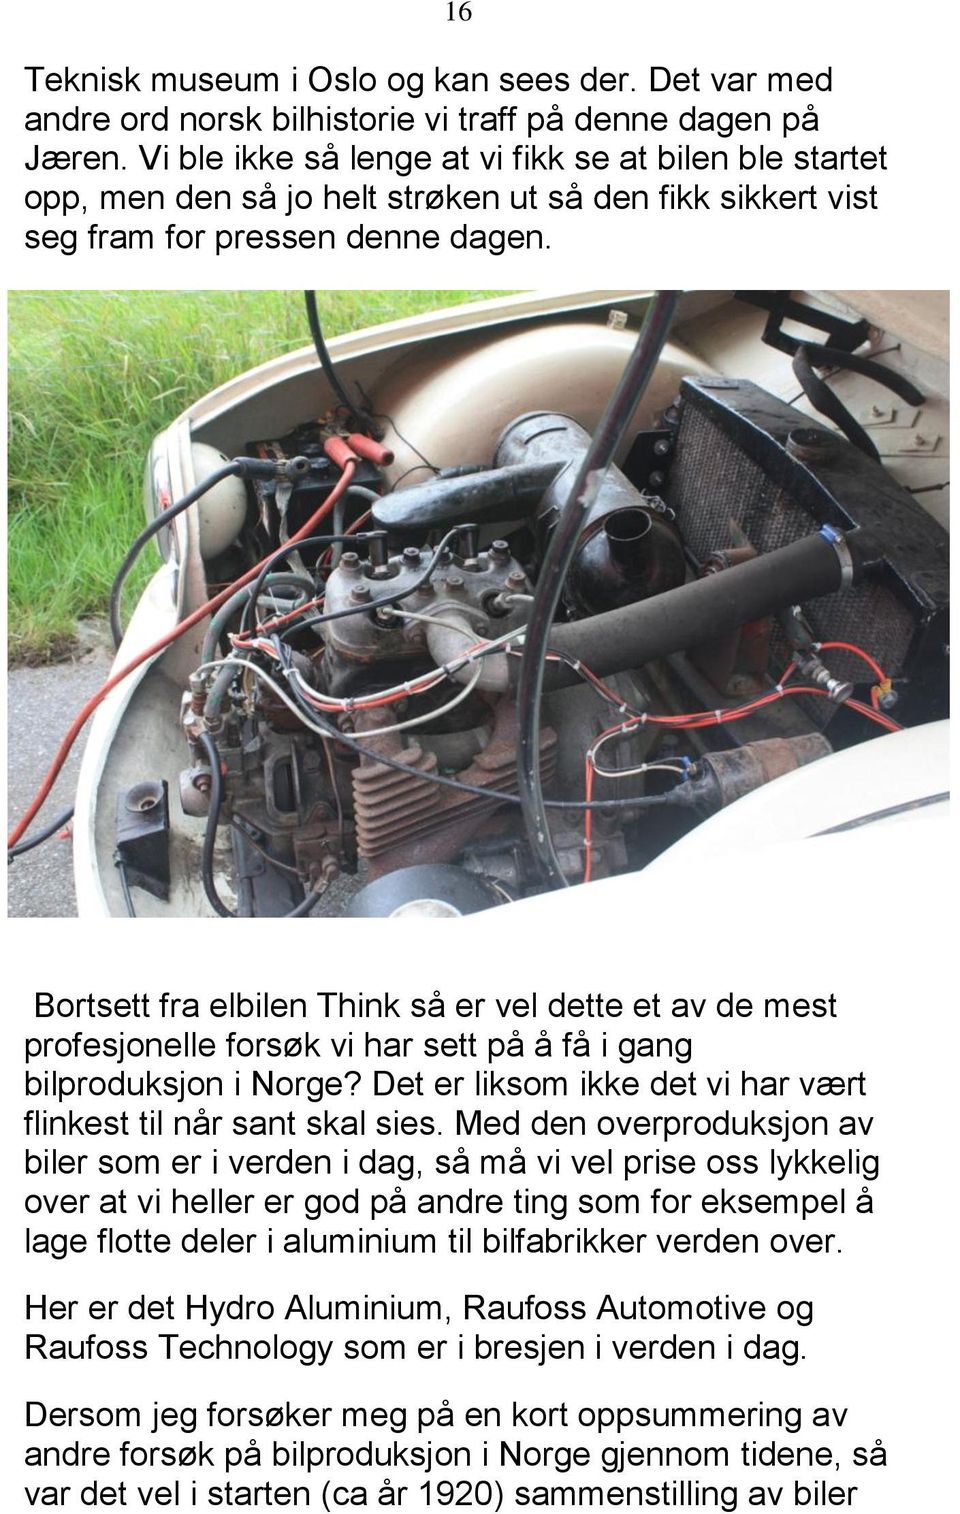 Bortsett fra elbilen Think så er vel dette et av de mest profesjonelle forsøk vi har sett på å få i gang bilproduksjon i Norge? Det er liksom ikke det vi har vært flinkest til når sant skal sies.